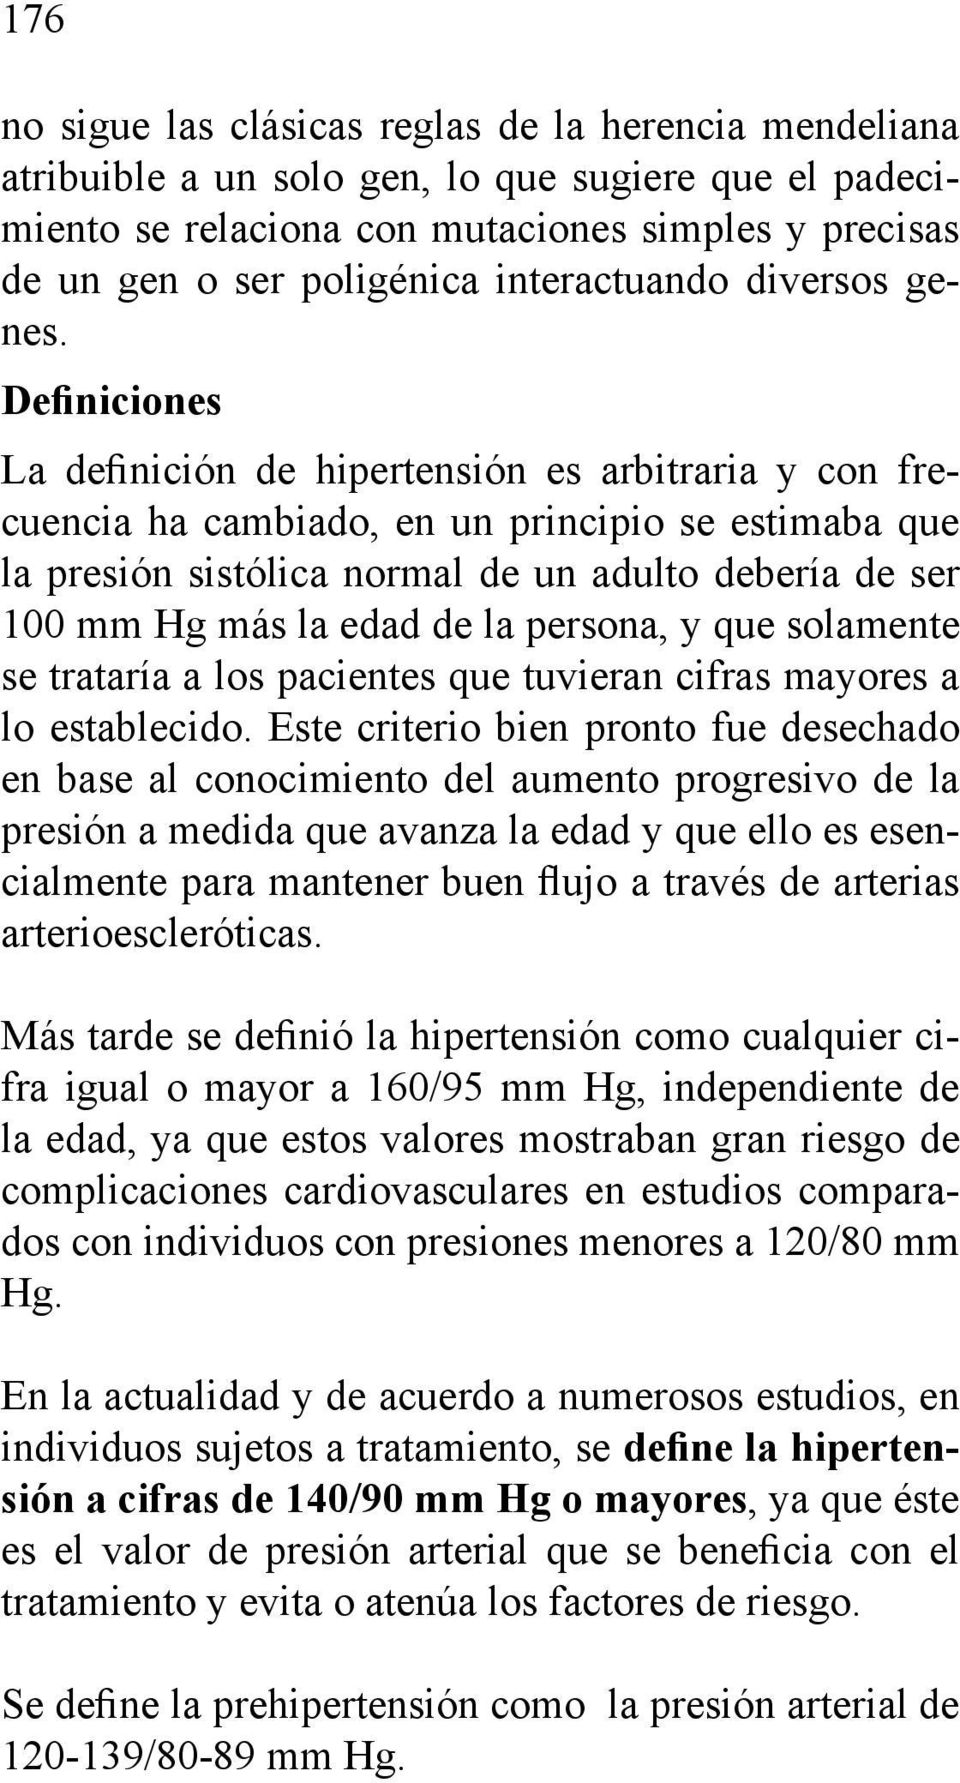 Definiciones La definición de hipertensión es arbitraria y con frecuencia ha cambiado, en un principio se estimaba que la presión sistólica normal de un adulto debería de ser 100 mm Hg más la edad de